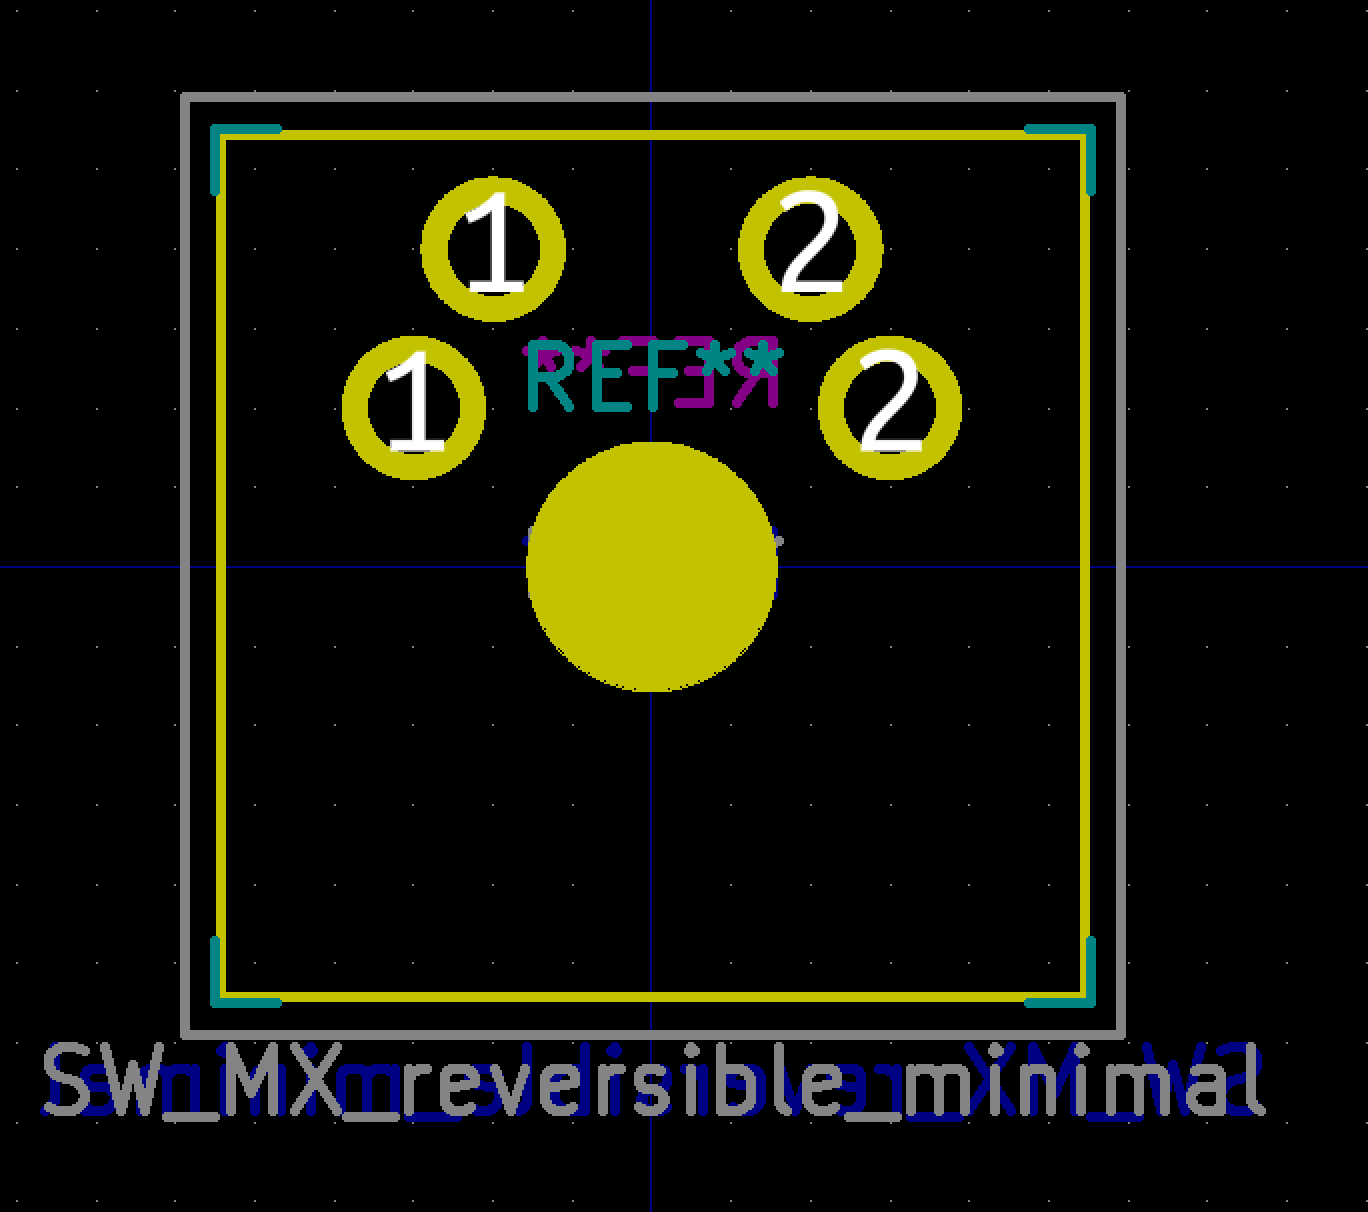 SW_MX_reversible_minimal